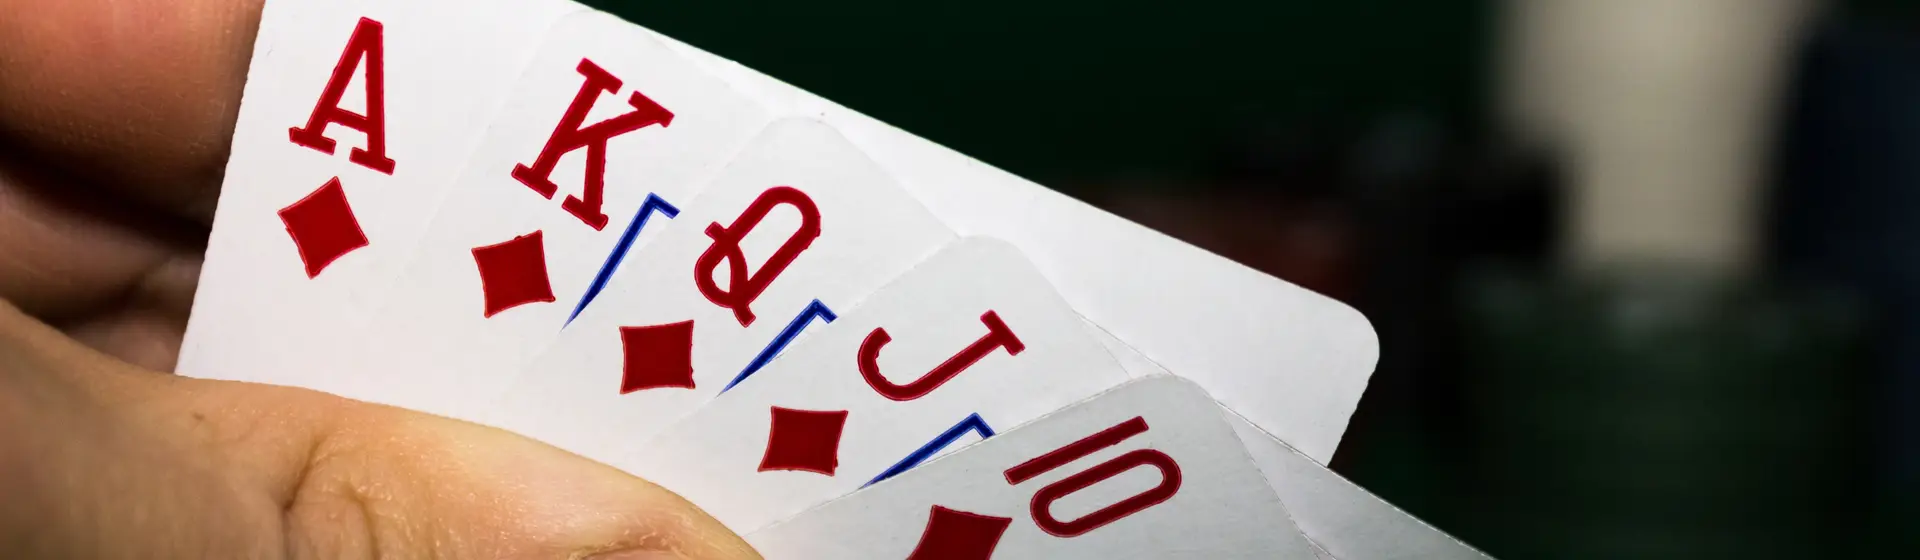 Cartas usadas para diferentes jogos de baralho em destaque